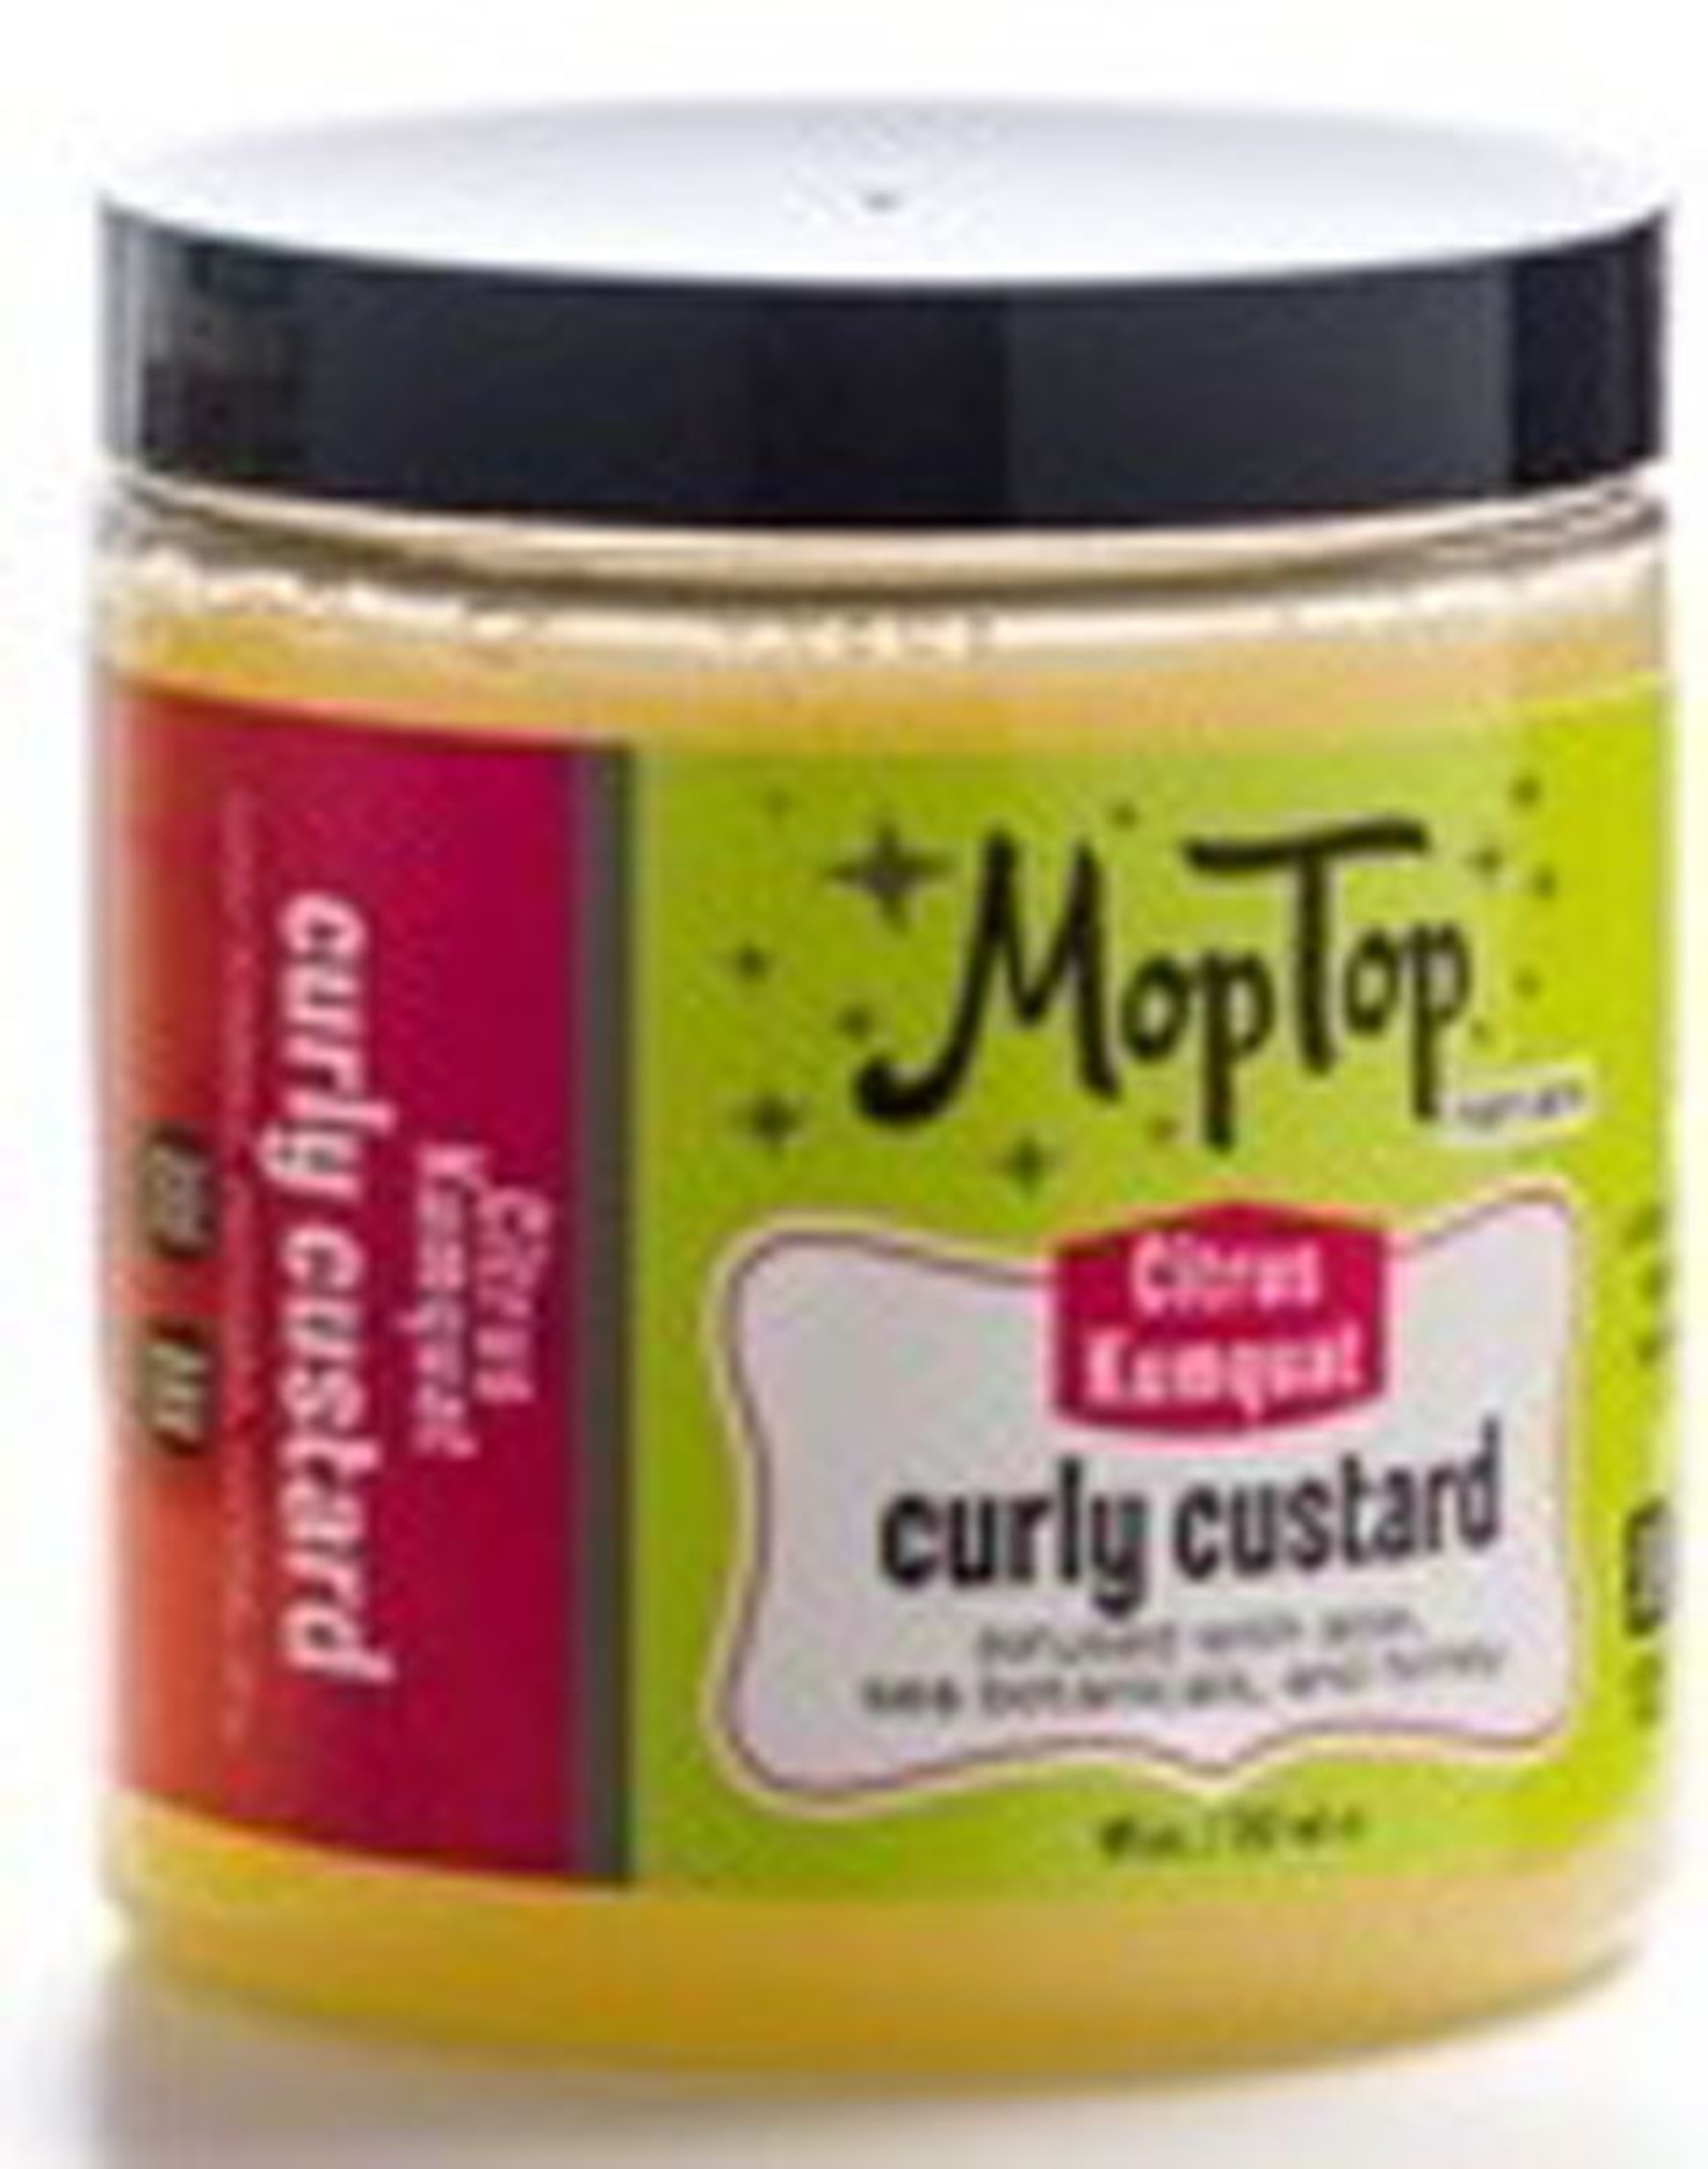 MopTop Hair Care Introduces Curly Hair Custard